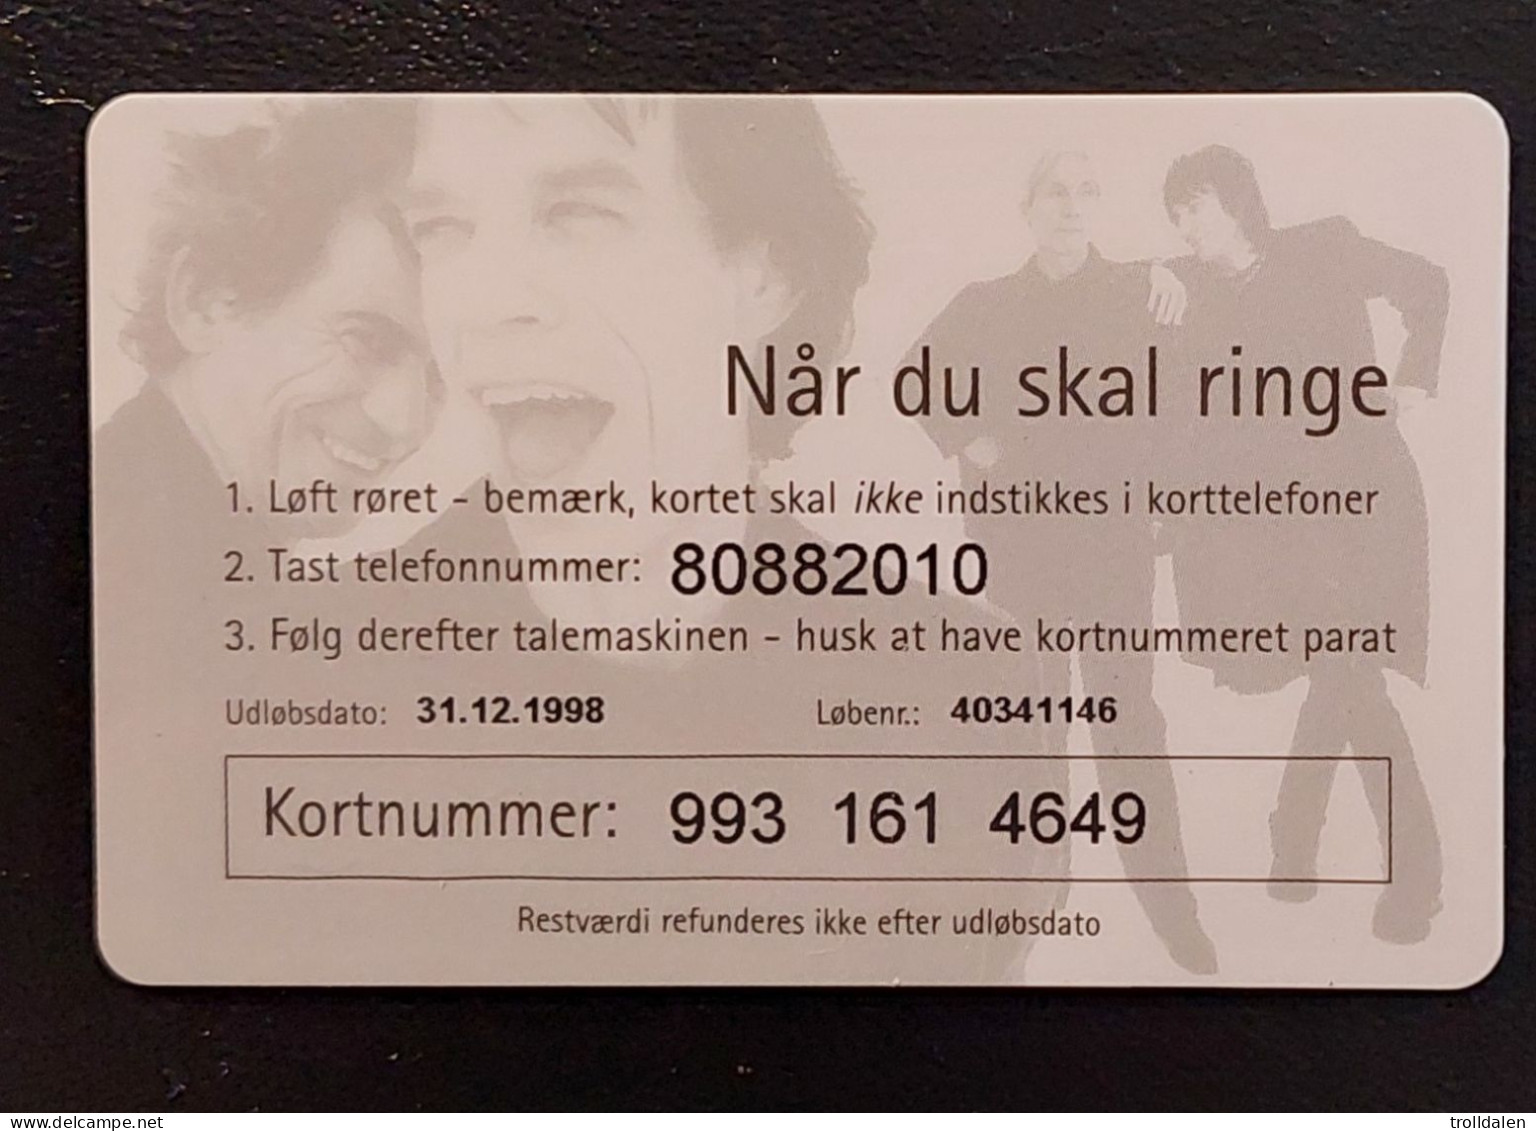 Denmark , Rolling Stones , Copenhagen 29.1.98 - Dänemark